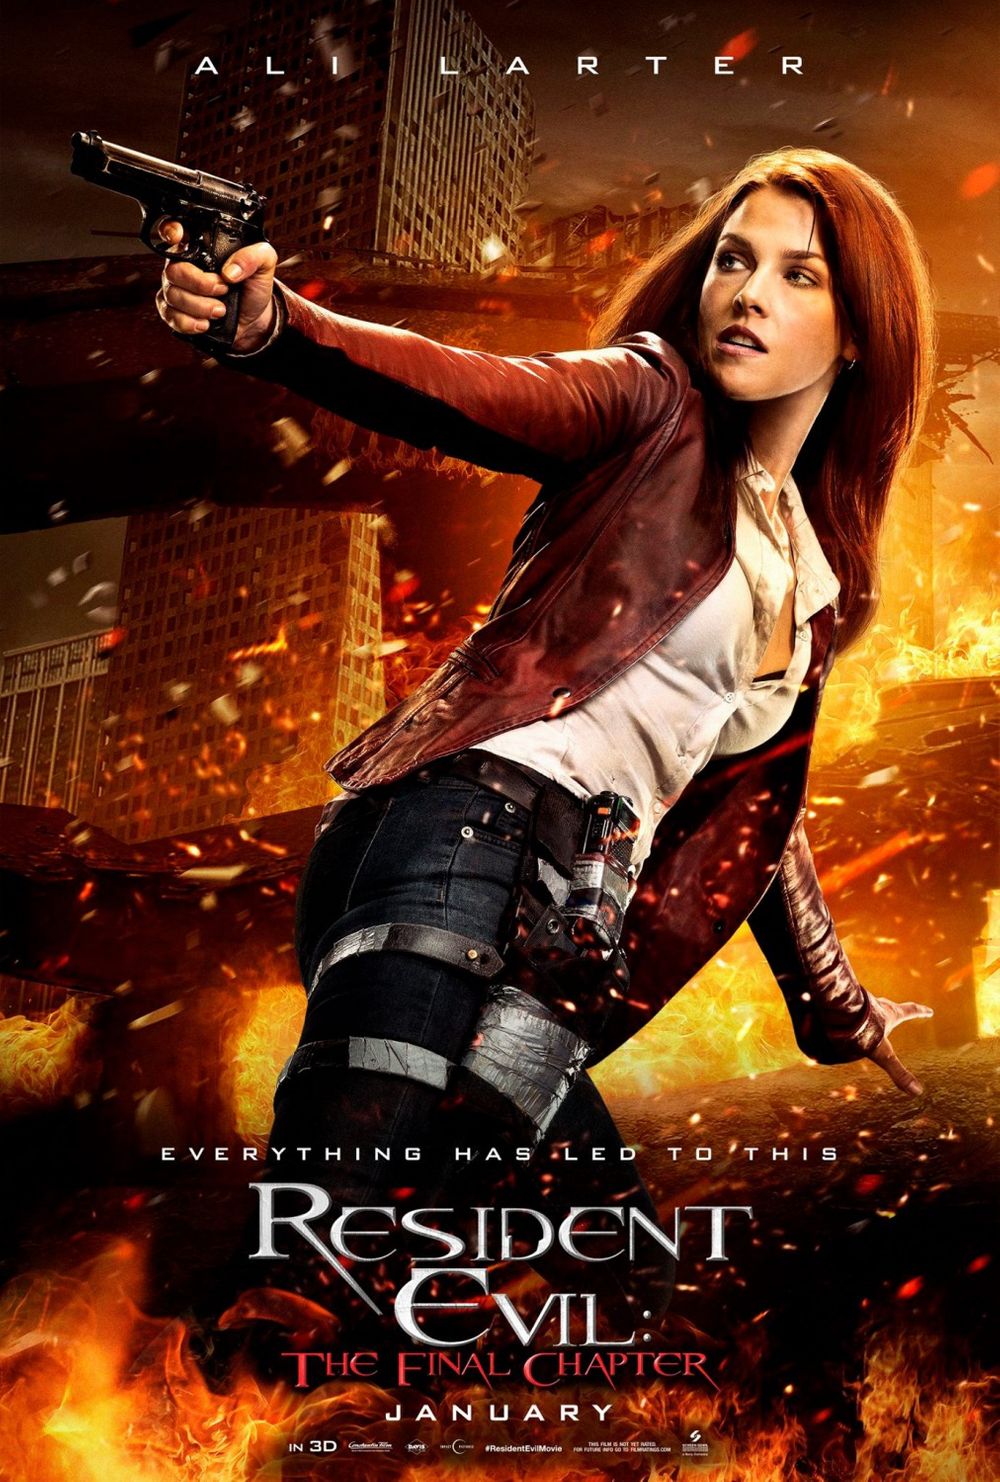 Resident Evil: The Final Chapter (2016) - Regenerator Attack Scene